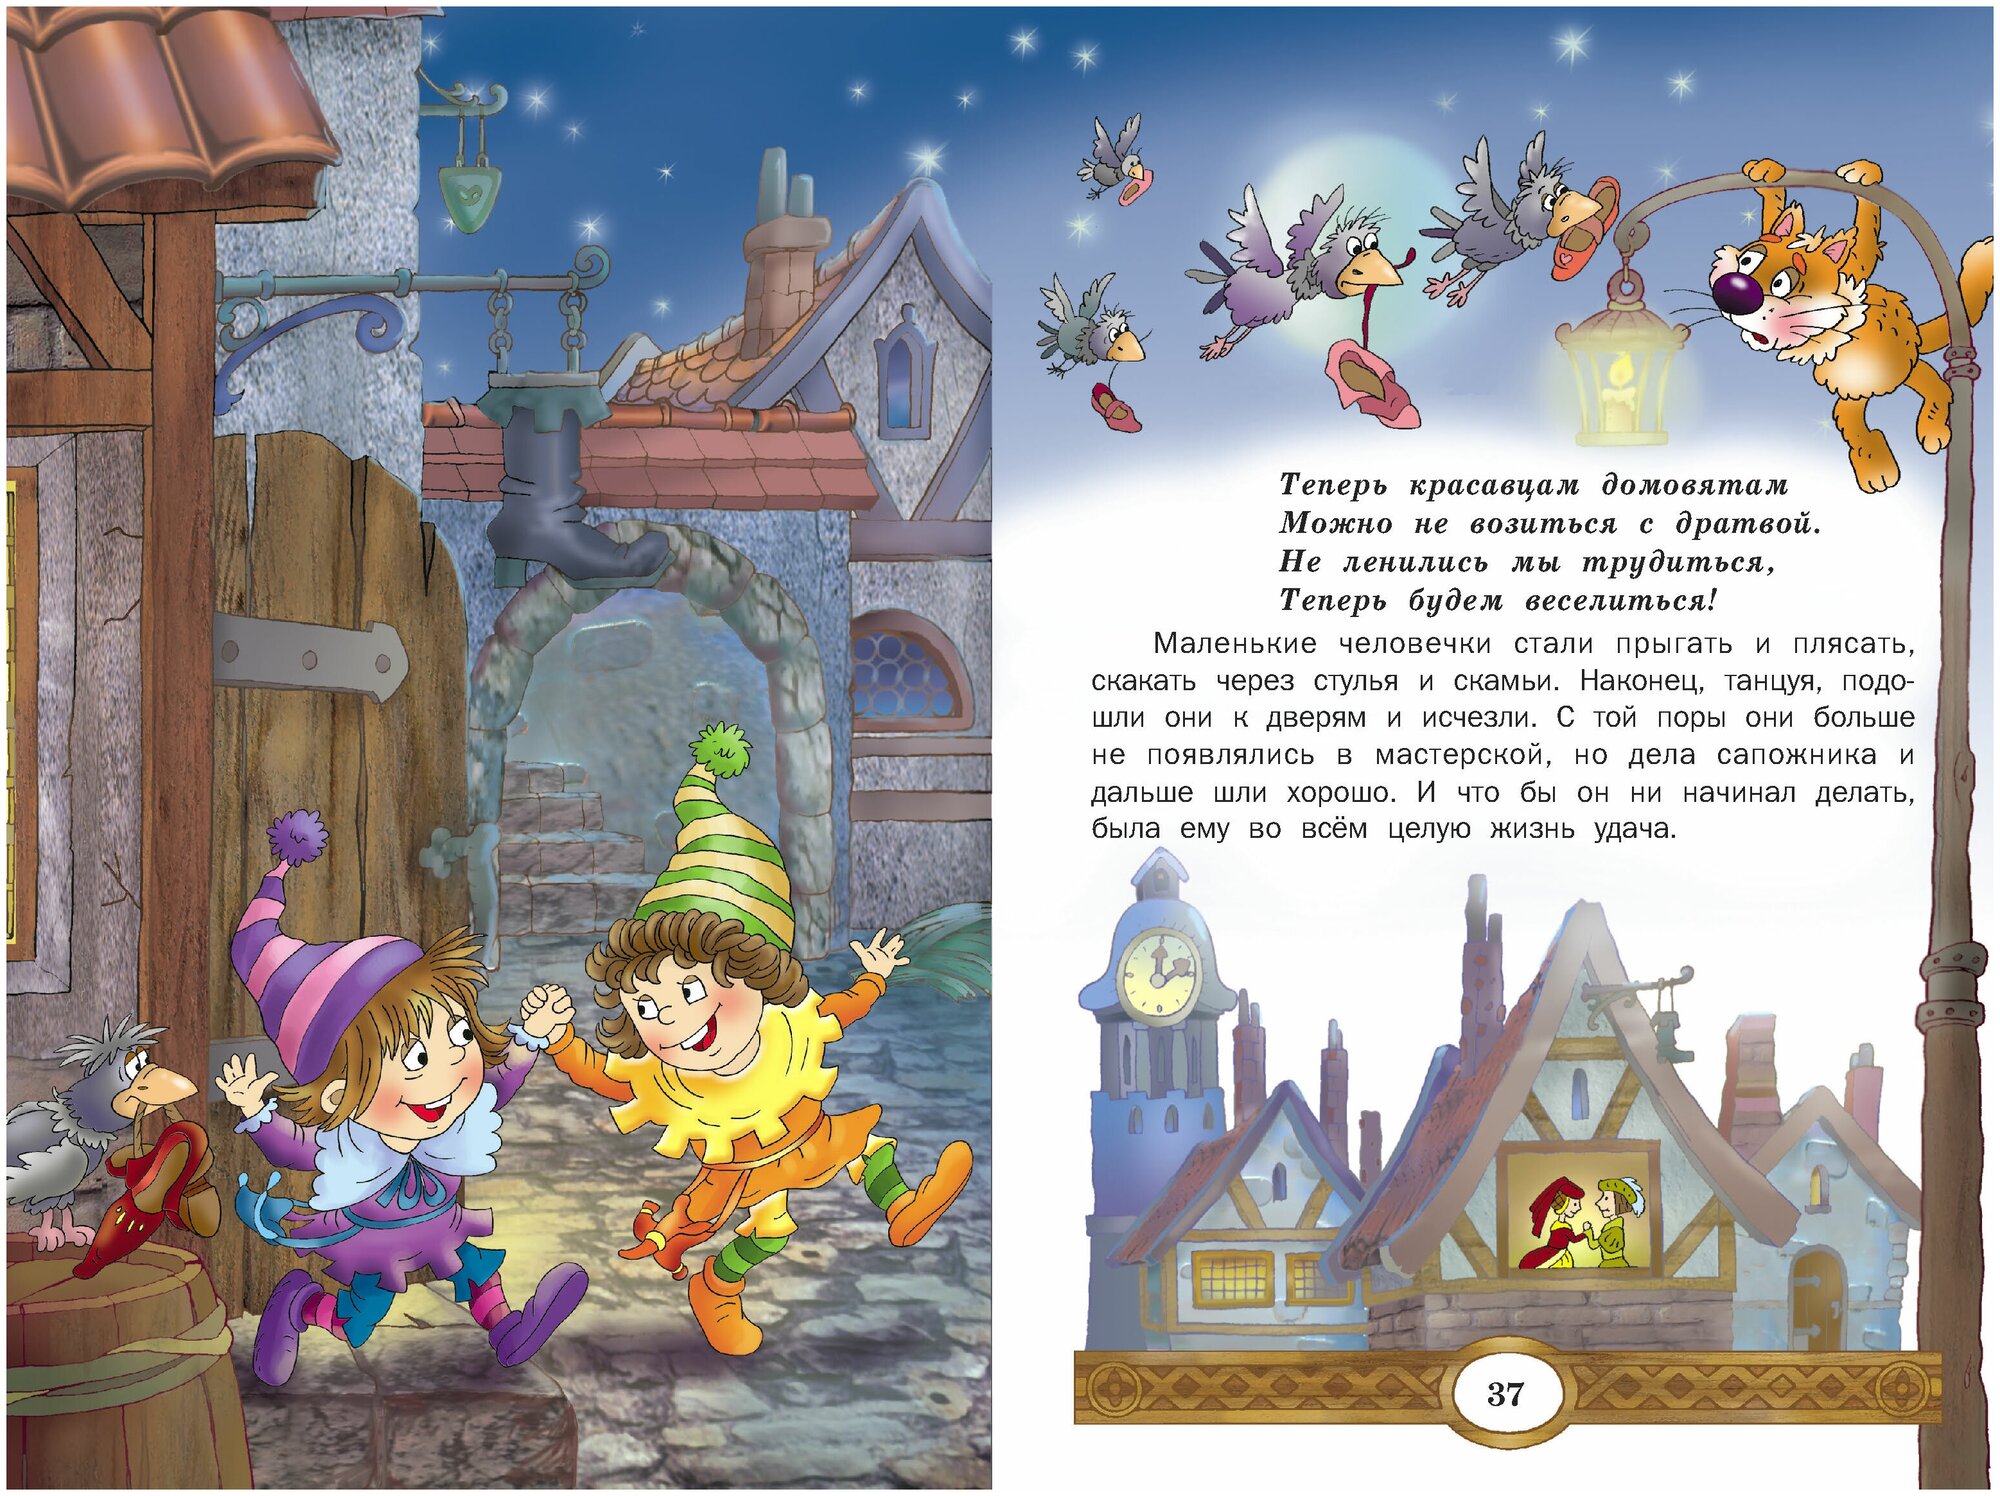 Детская книга Братья Гримм: Сказки, сборник сказок для детей